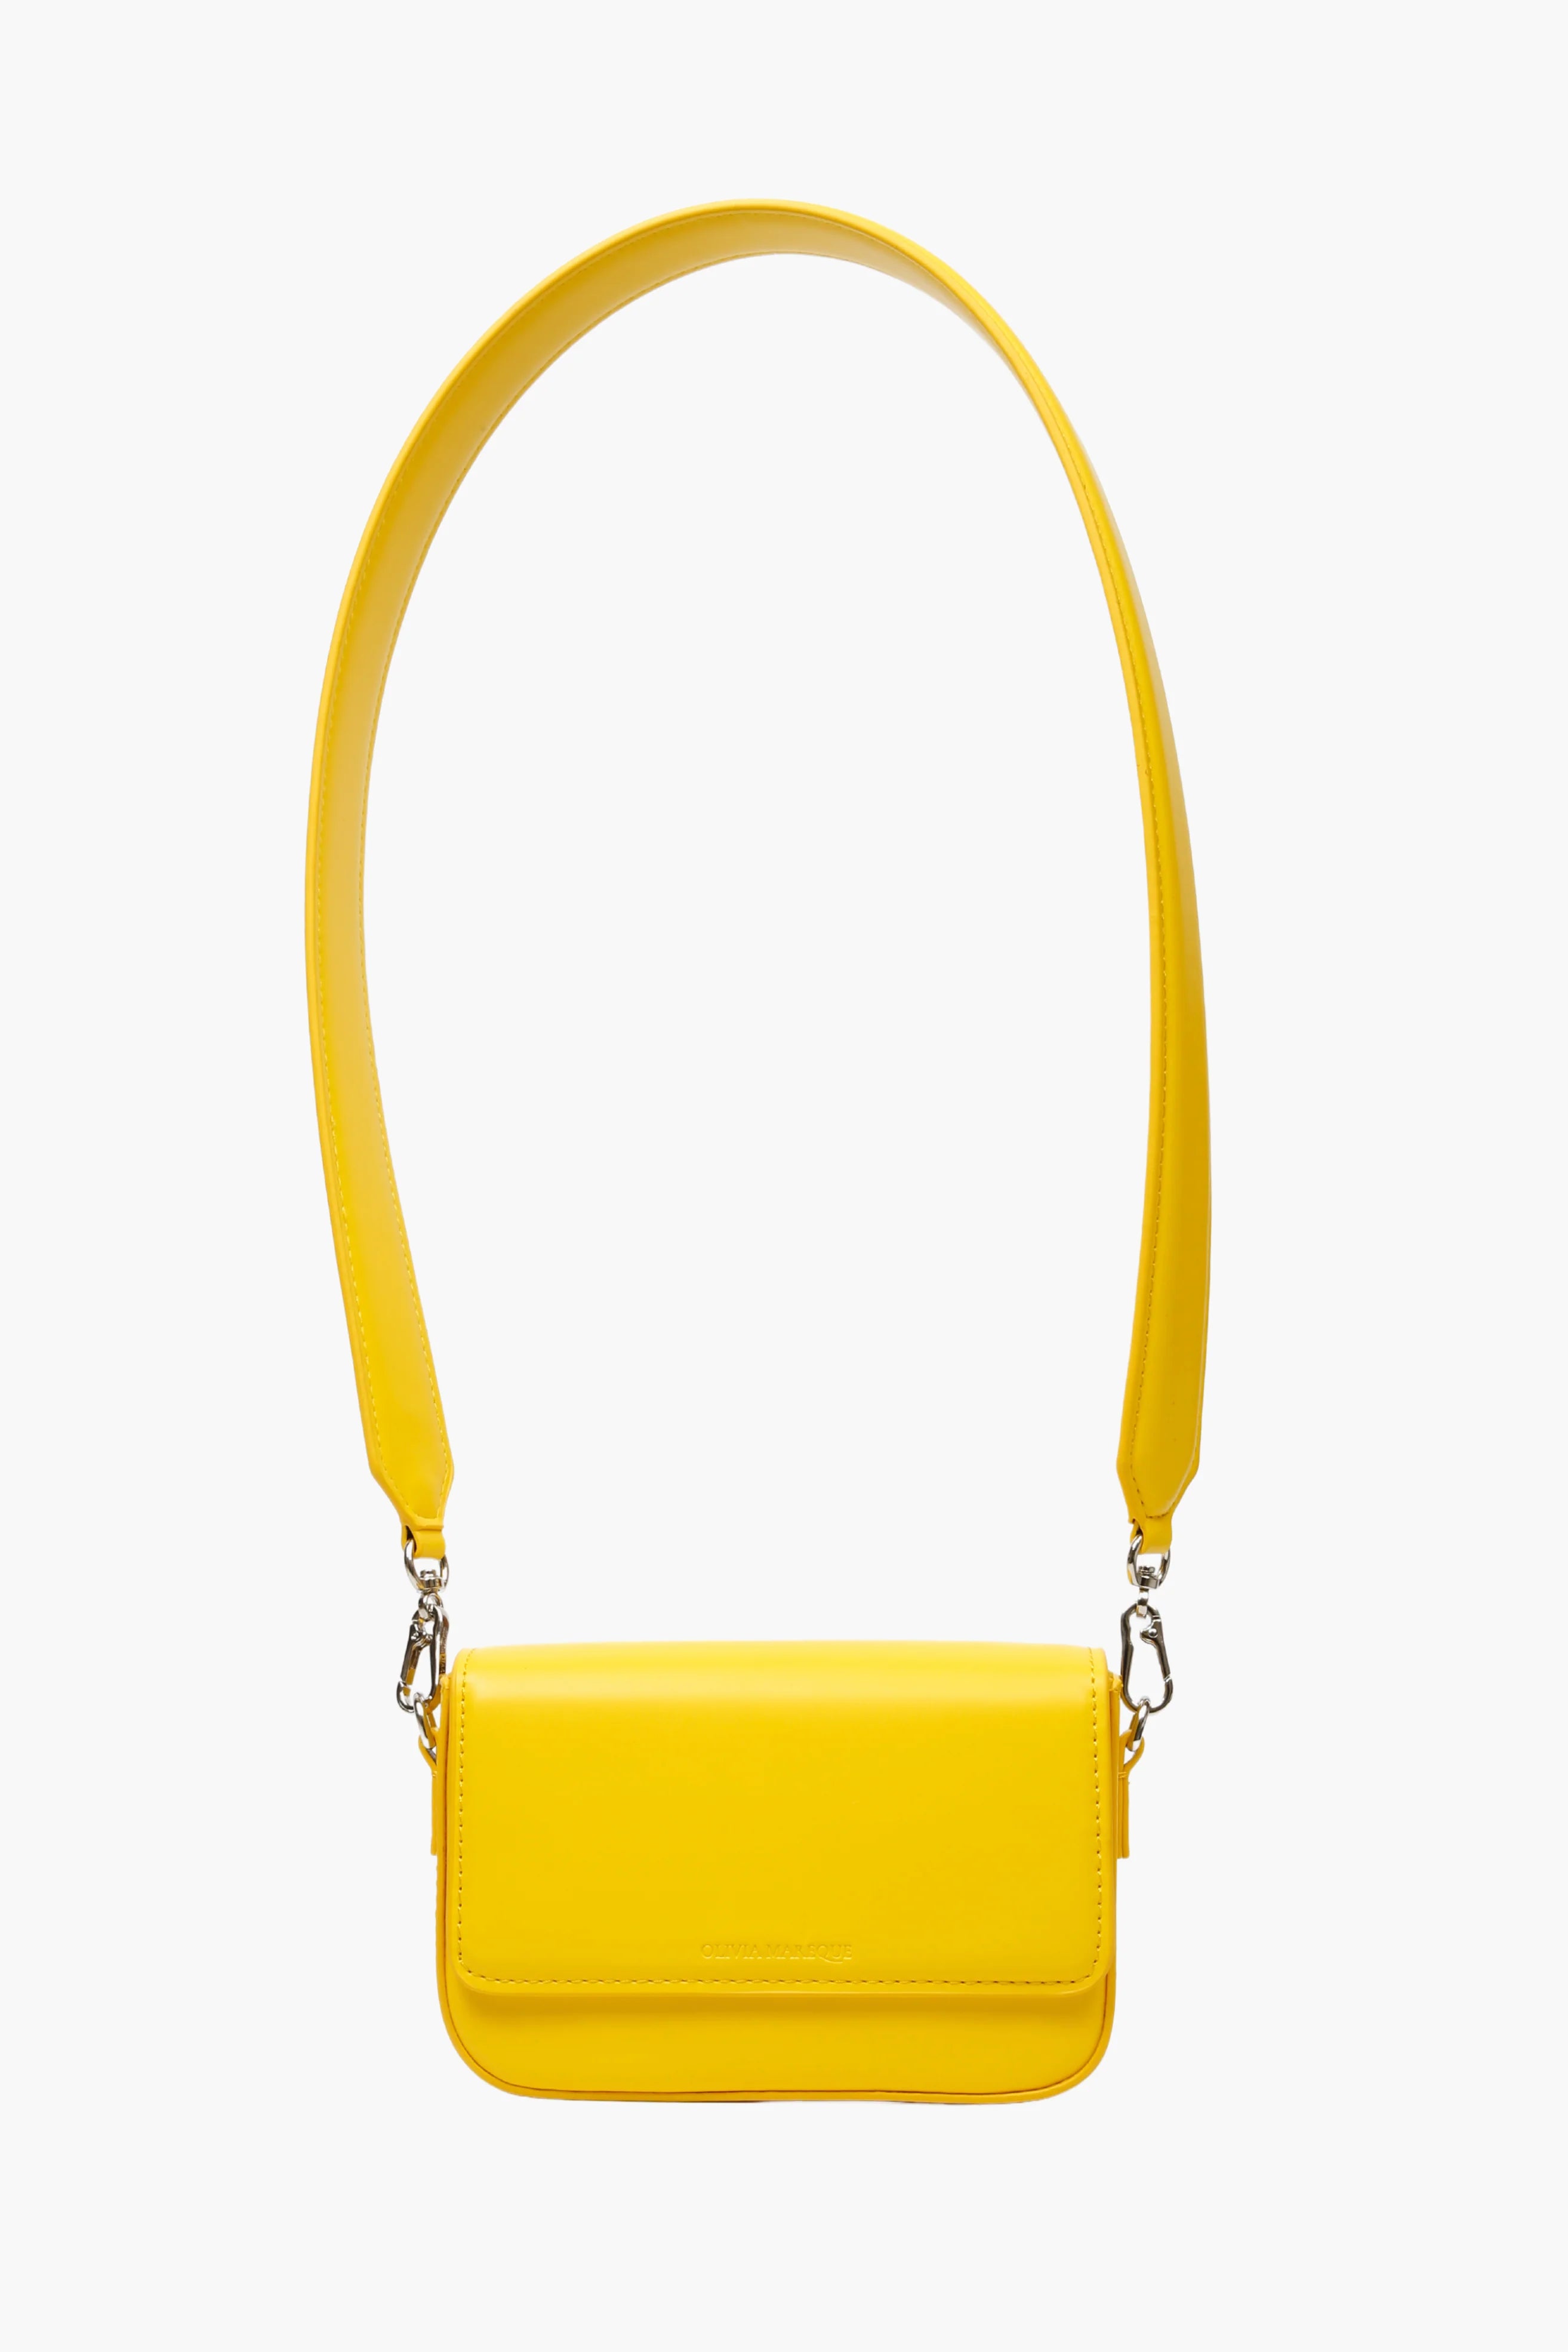 Yellow Pantone Bag